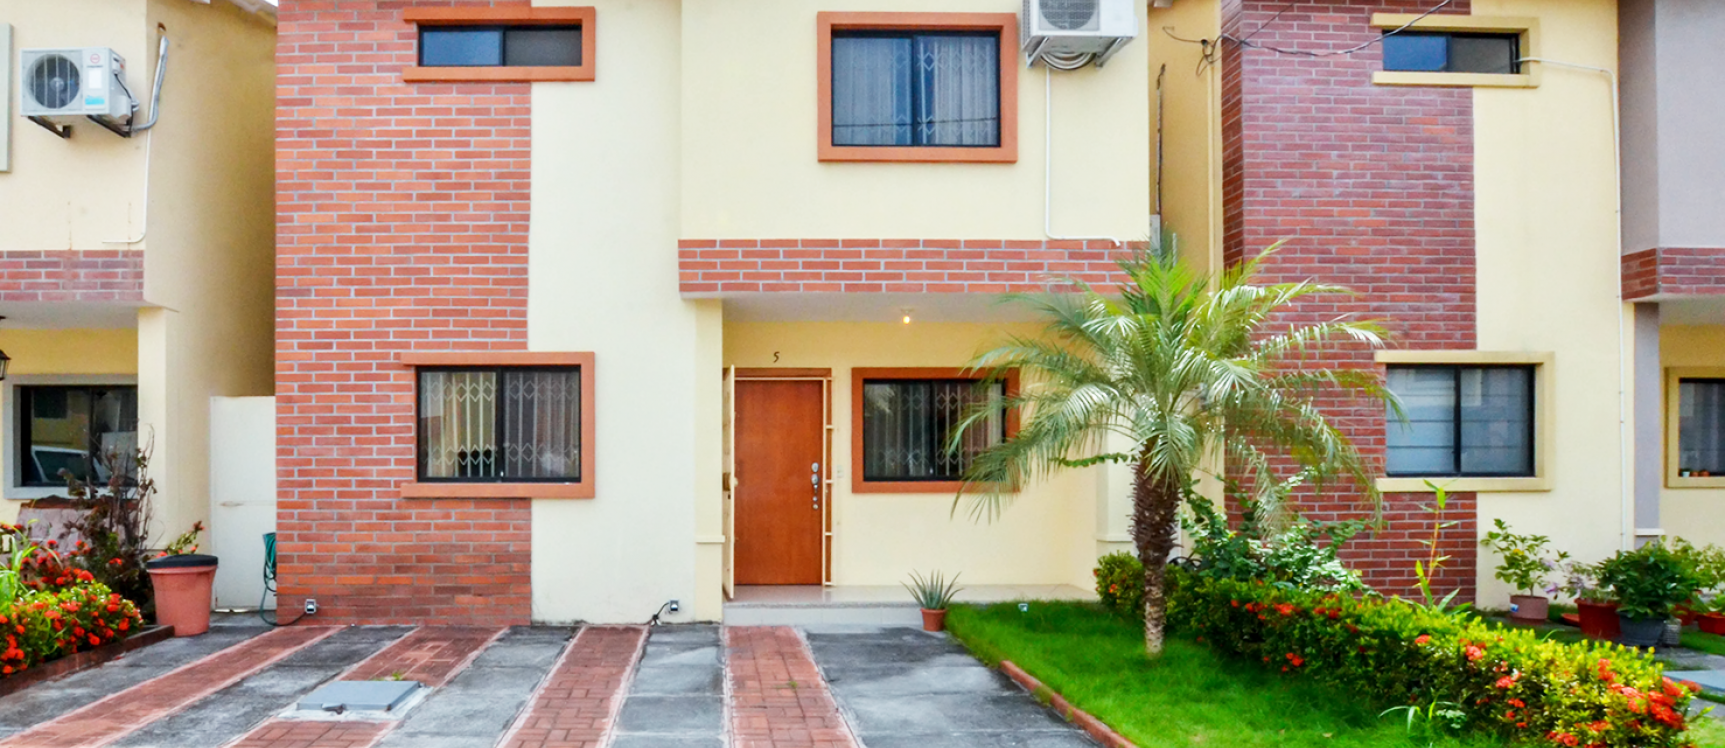 GeoBienes - Casa en venta en Urbanización Milán sector Vía Salitre - Samborondón - Plusvalia Guayaquil Casas de venta y alquiler Inmobiliaria Ecuador